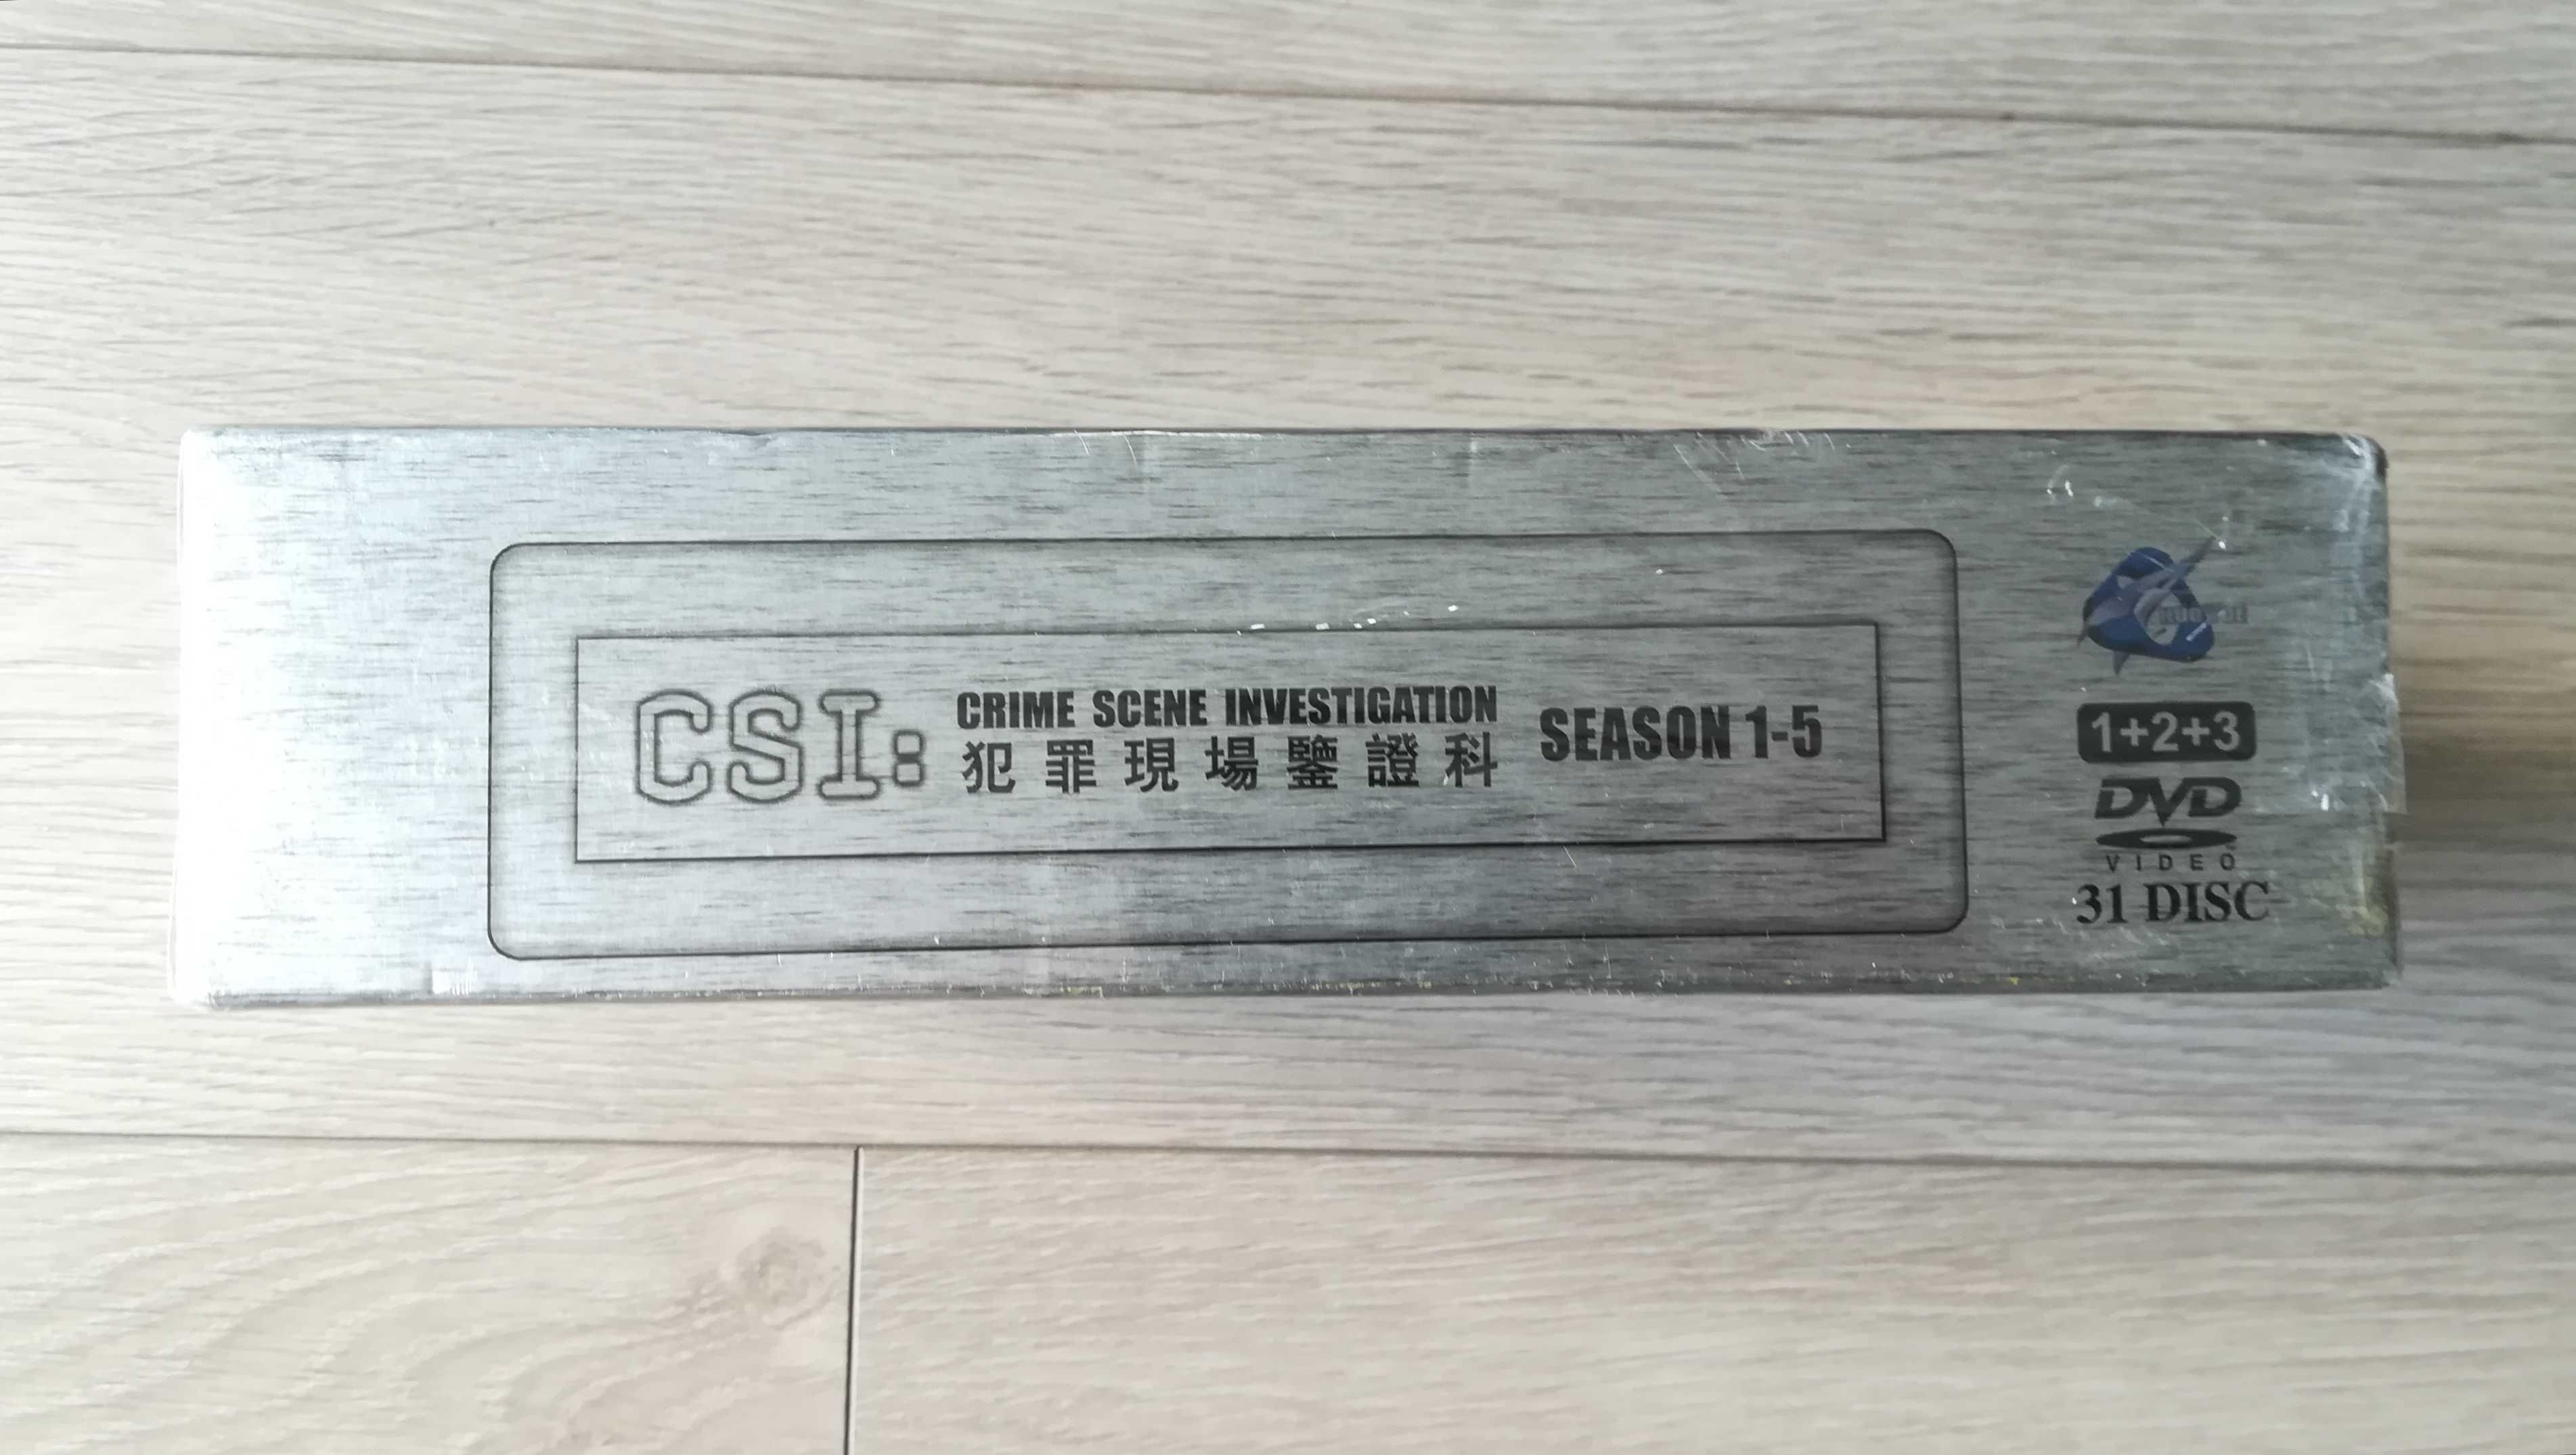 31 DVD CSI: sezony 1 2 3 4 5, Ultimate Box zafoliowany nowy i 2 gry